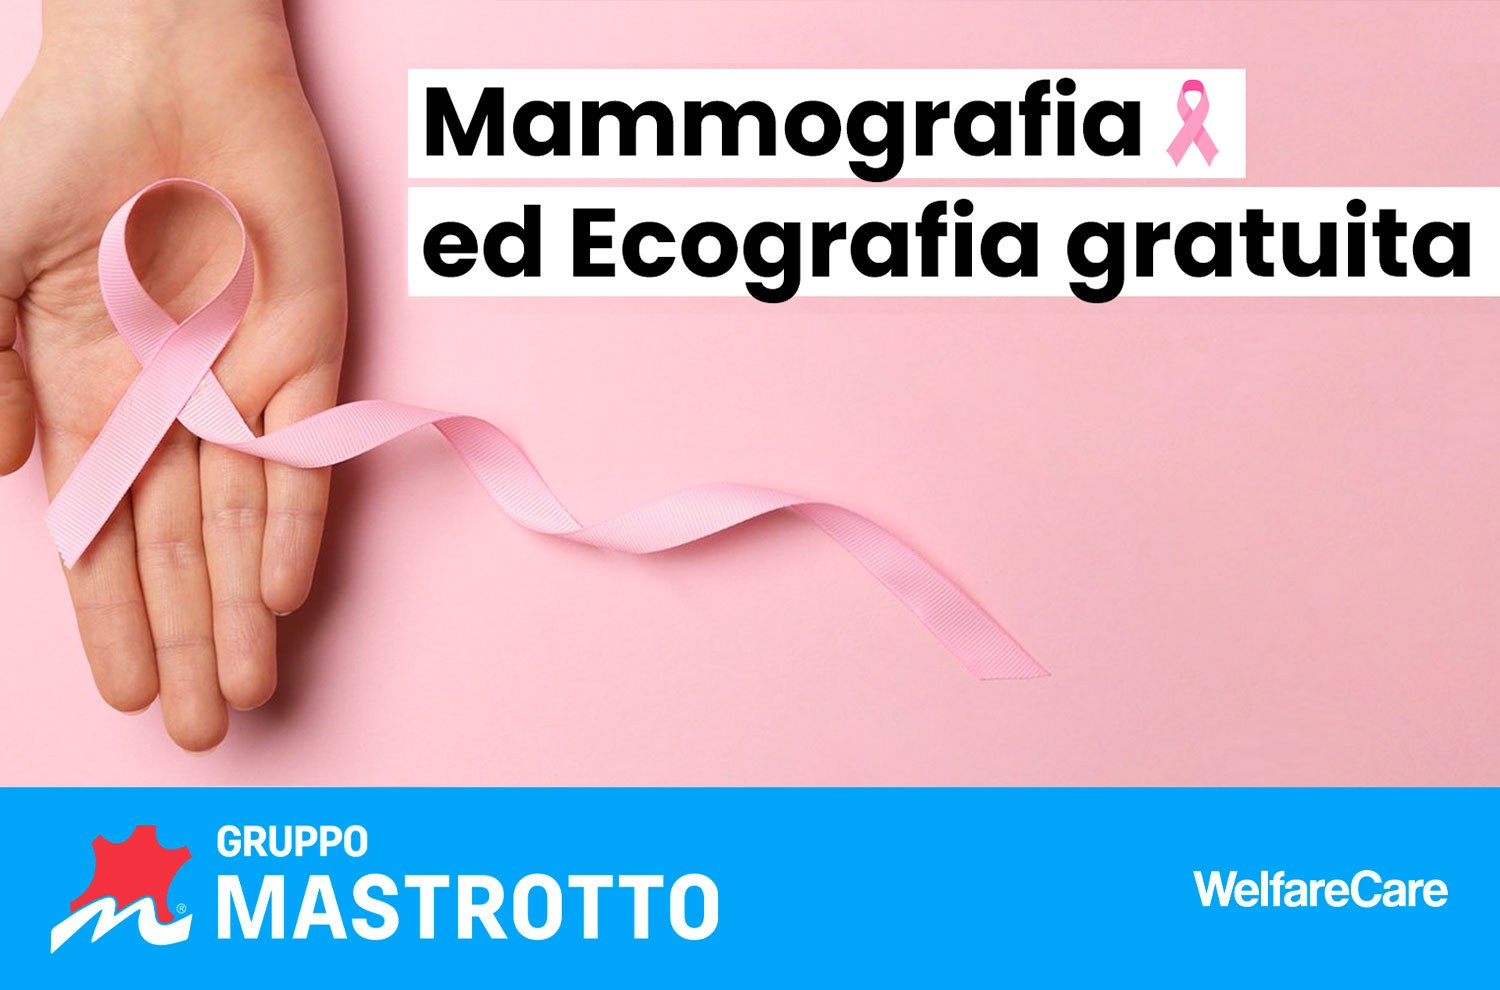 Copertina mammografia ed ecografia gratuita 1/2- Gruppo Mastrotto